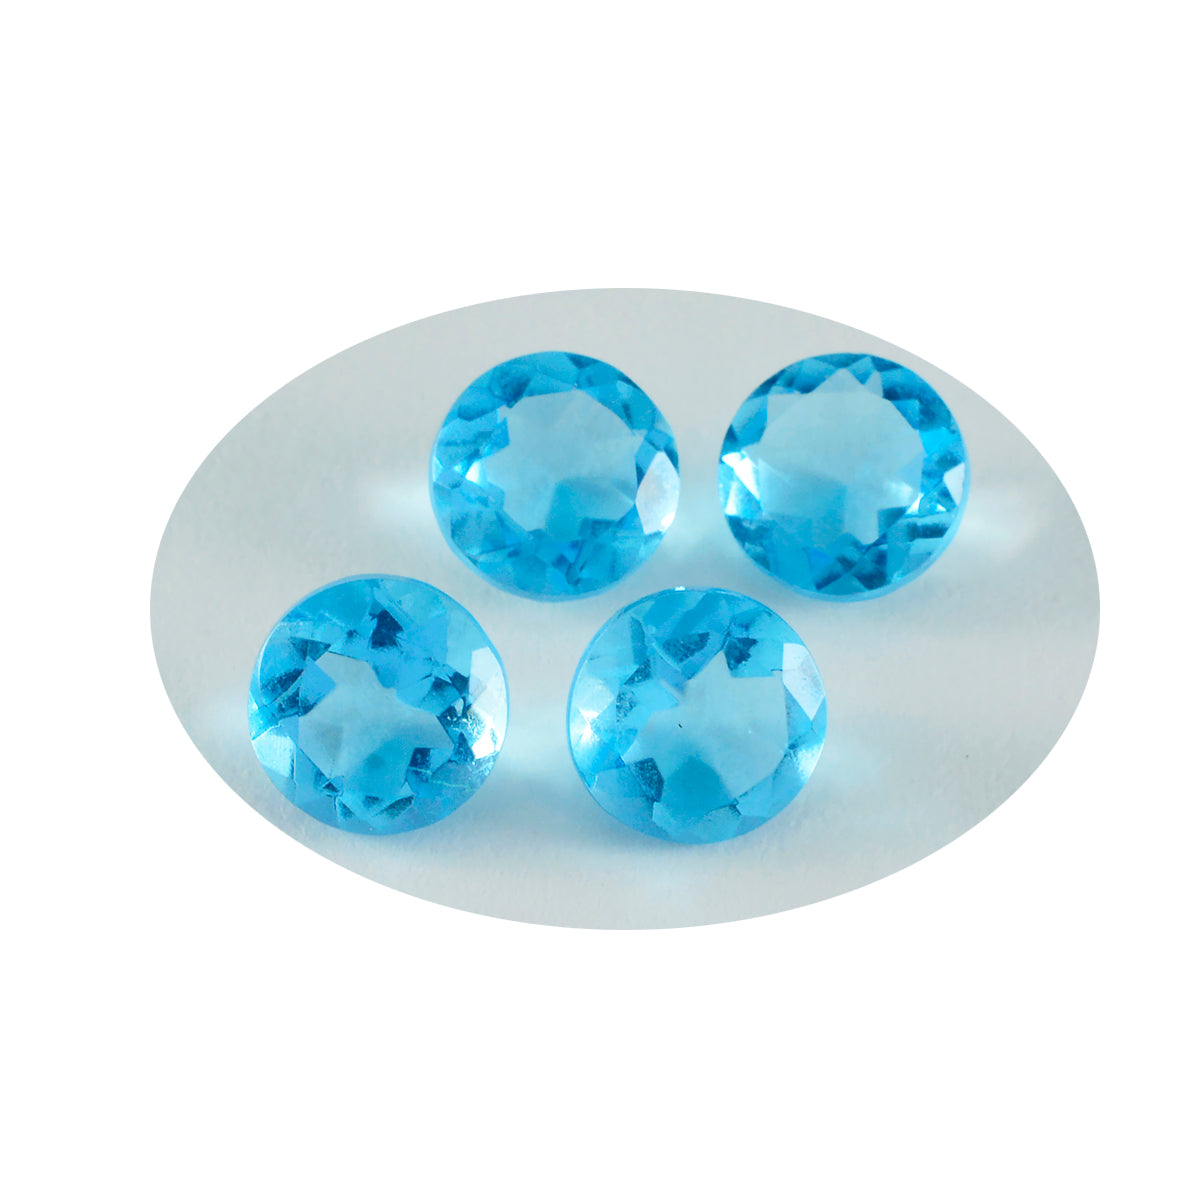 Riyogems 1pc topaze bleue cz facettes 14x14mm forme ronde a1 qualité pierres précieuses en vrac